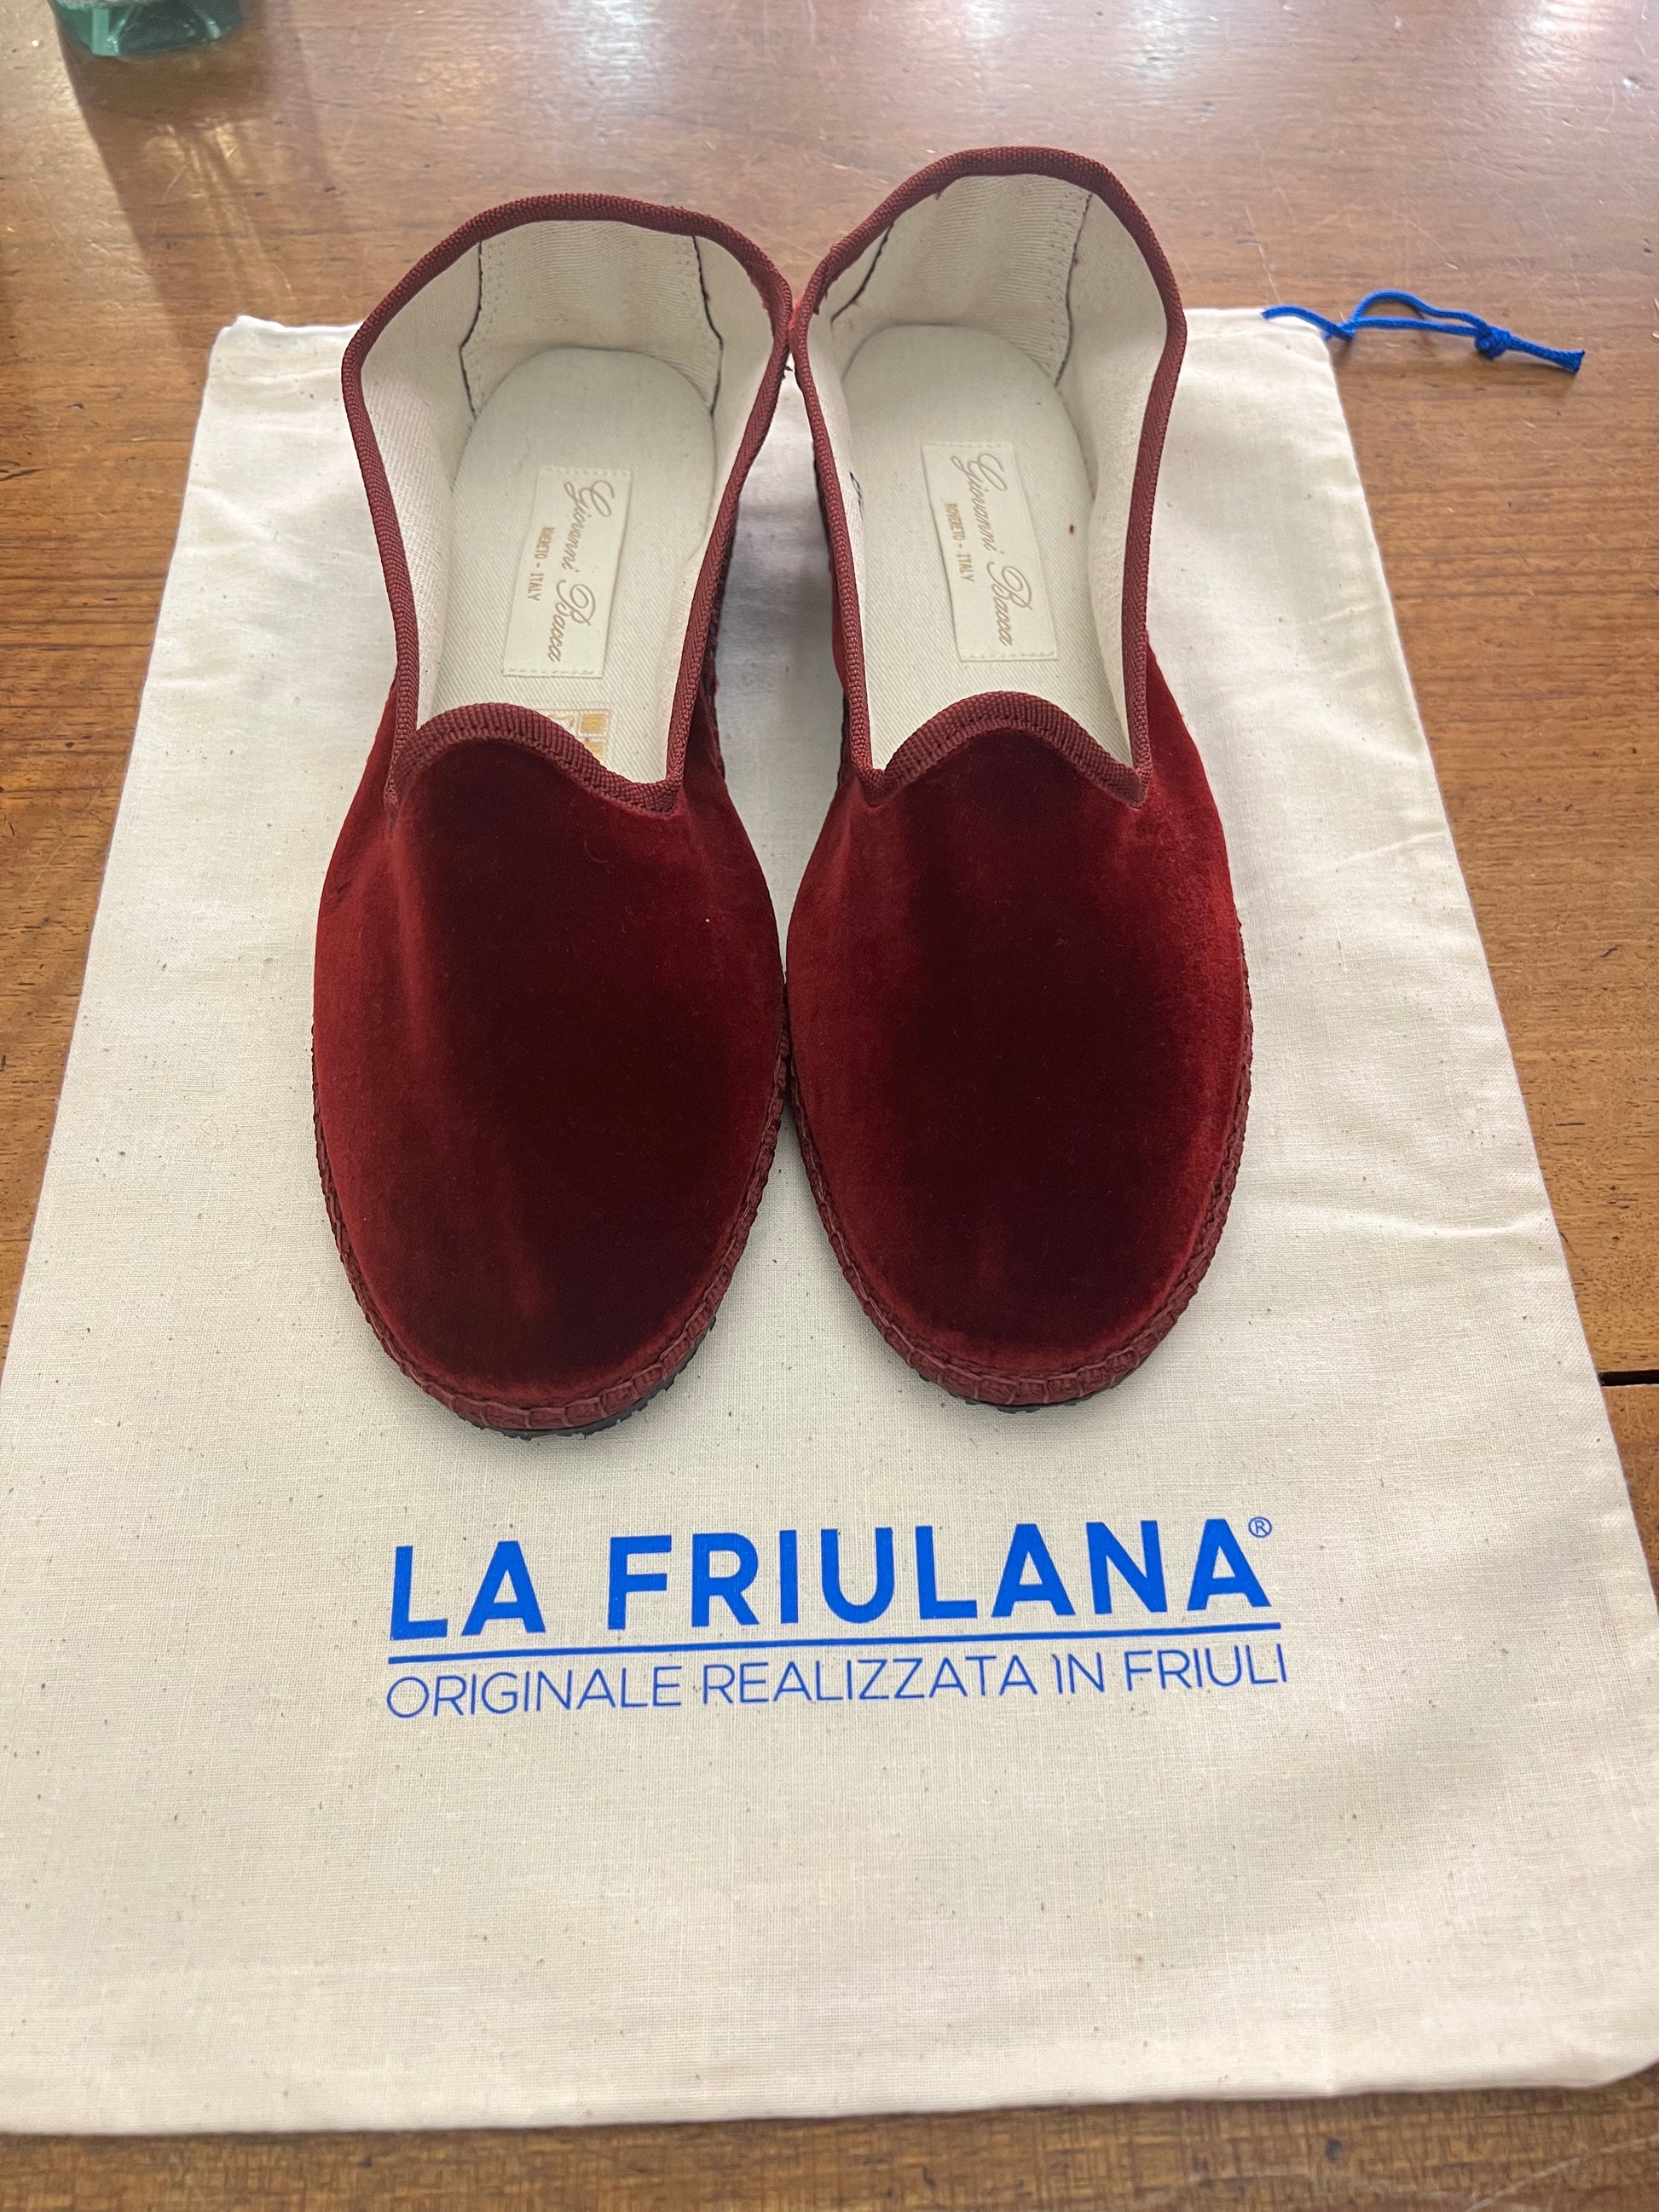 scarpe Friulane di colore bordeaux su sacchetto di cotone con marchio La Friulana originale realizzata in Friuli